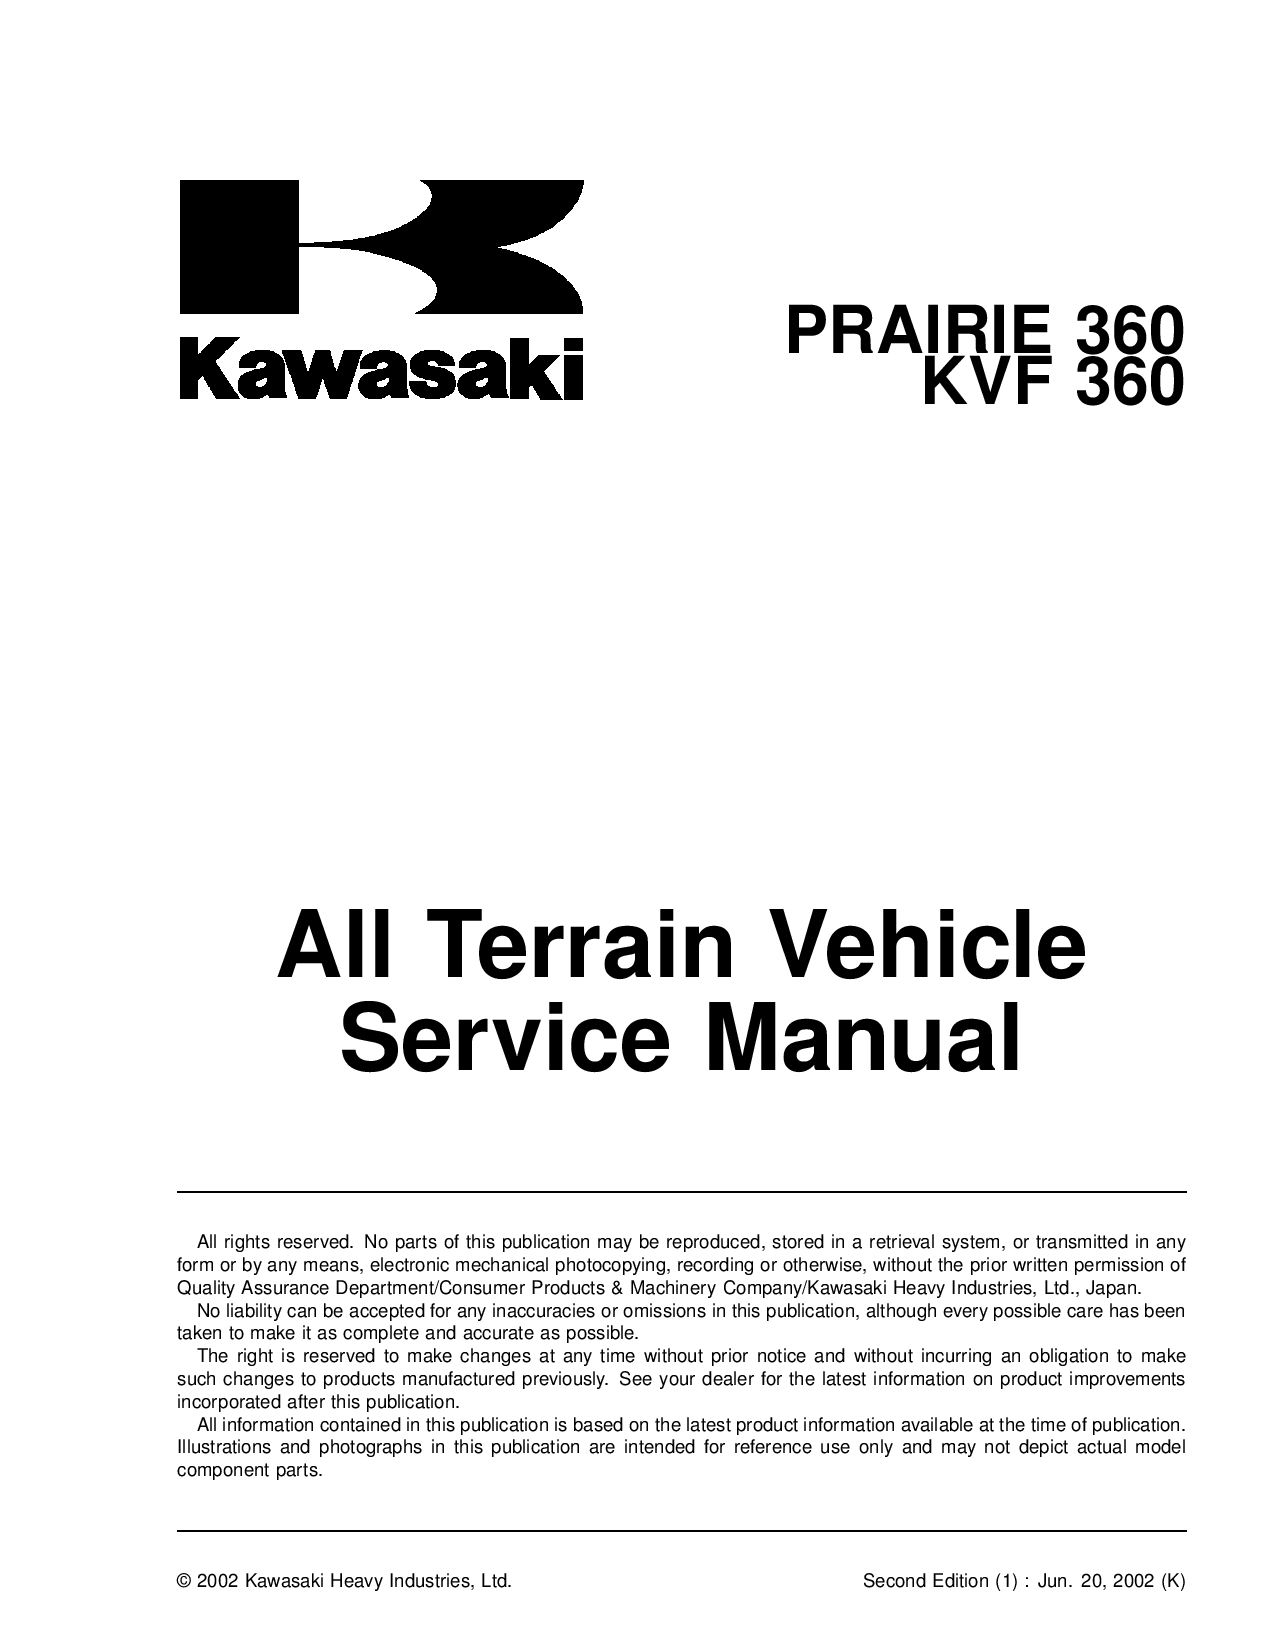 Kawasaki KVF 360 Prairie 360 2003 Repair Manual PDF Download Service manual Repair manual